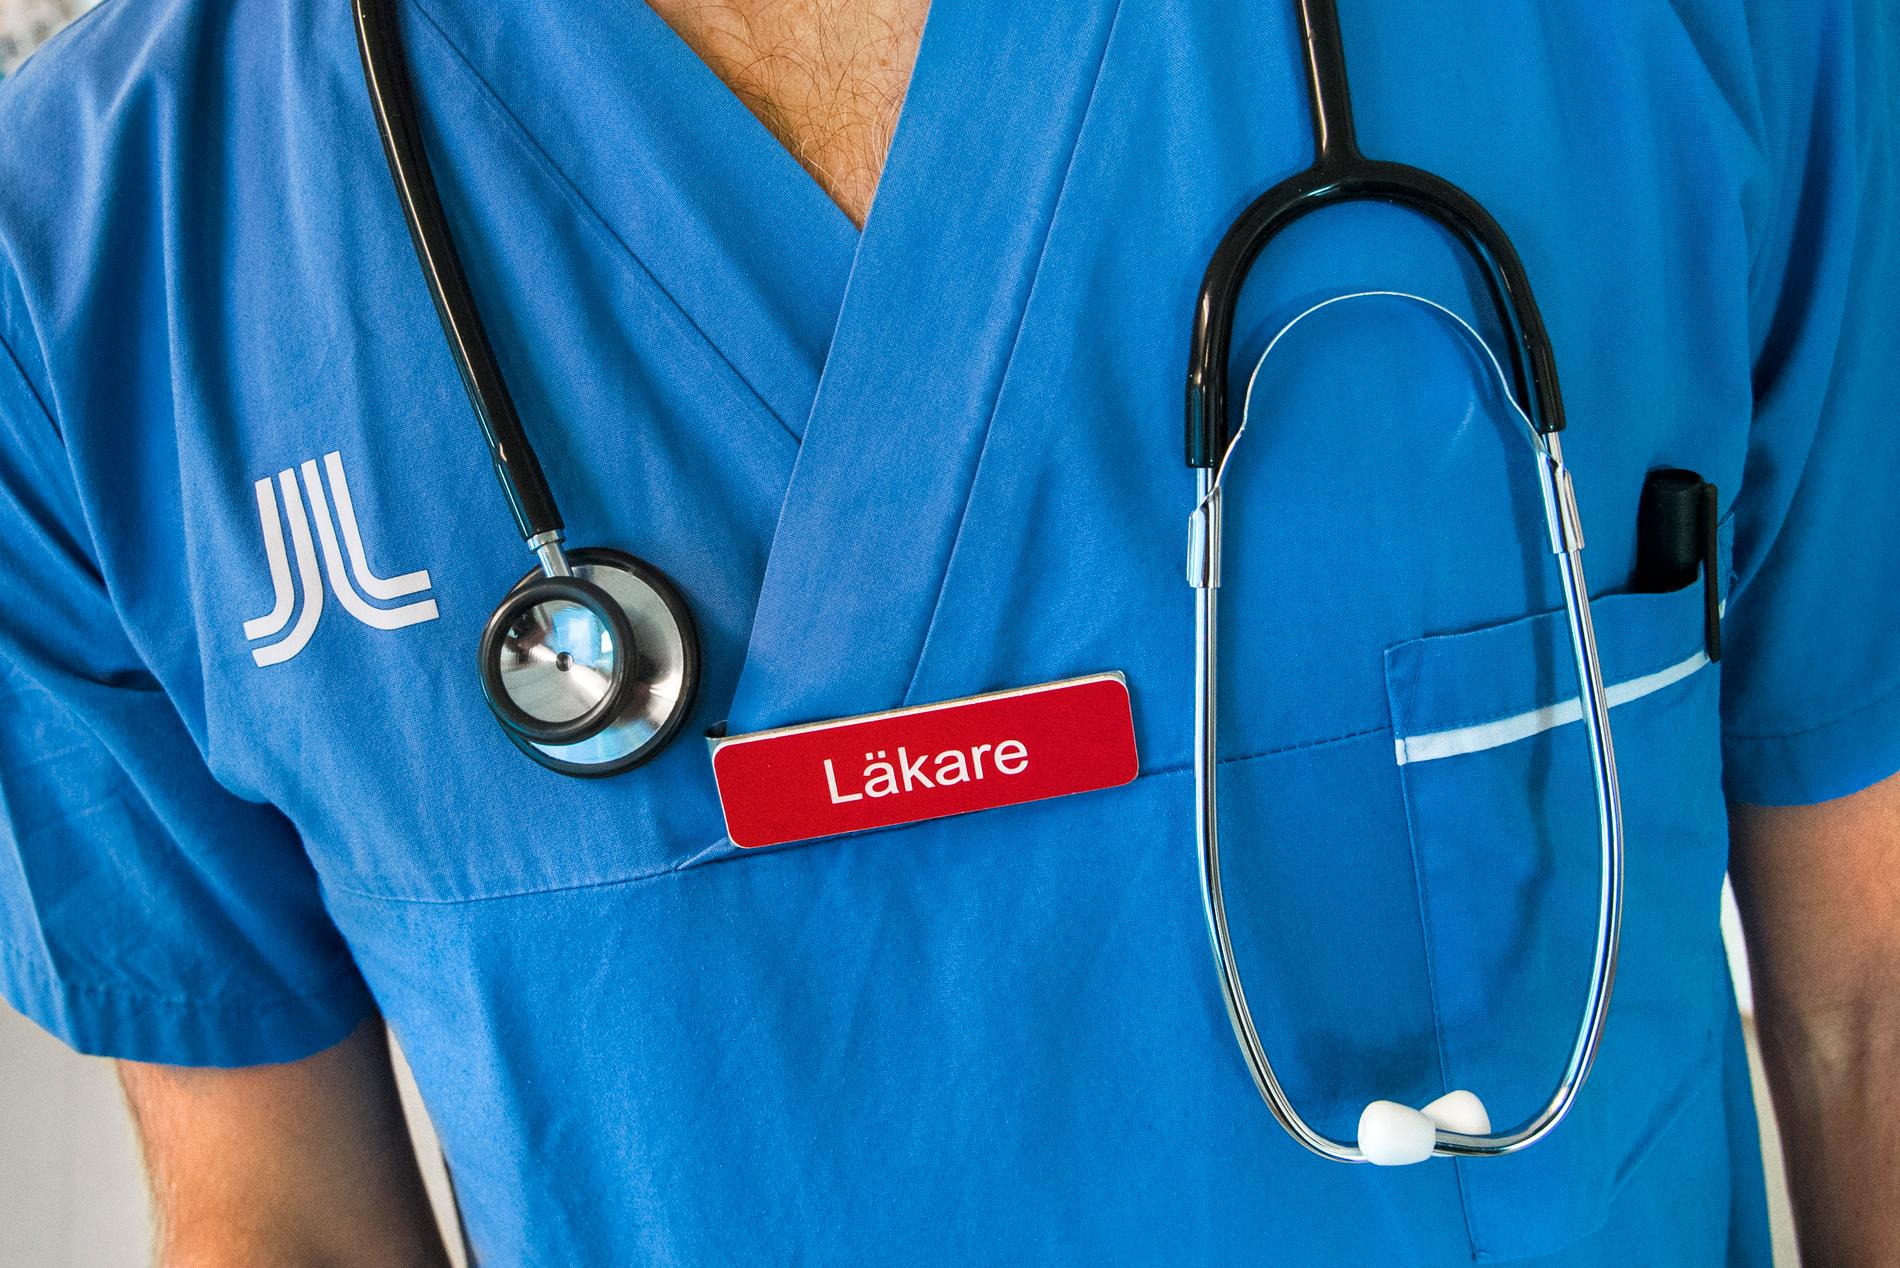 En läkare arbetade under flera år på ett svenskt sjukhus utan att betala skatt. Arkivbild.